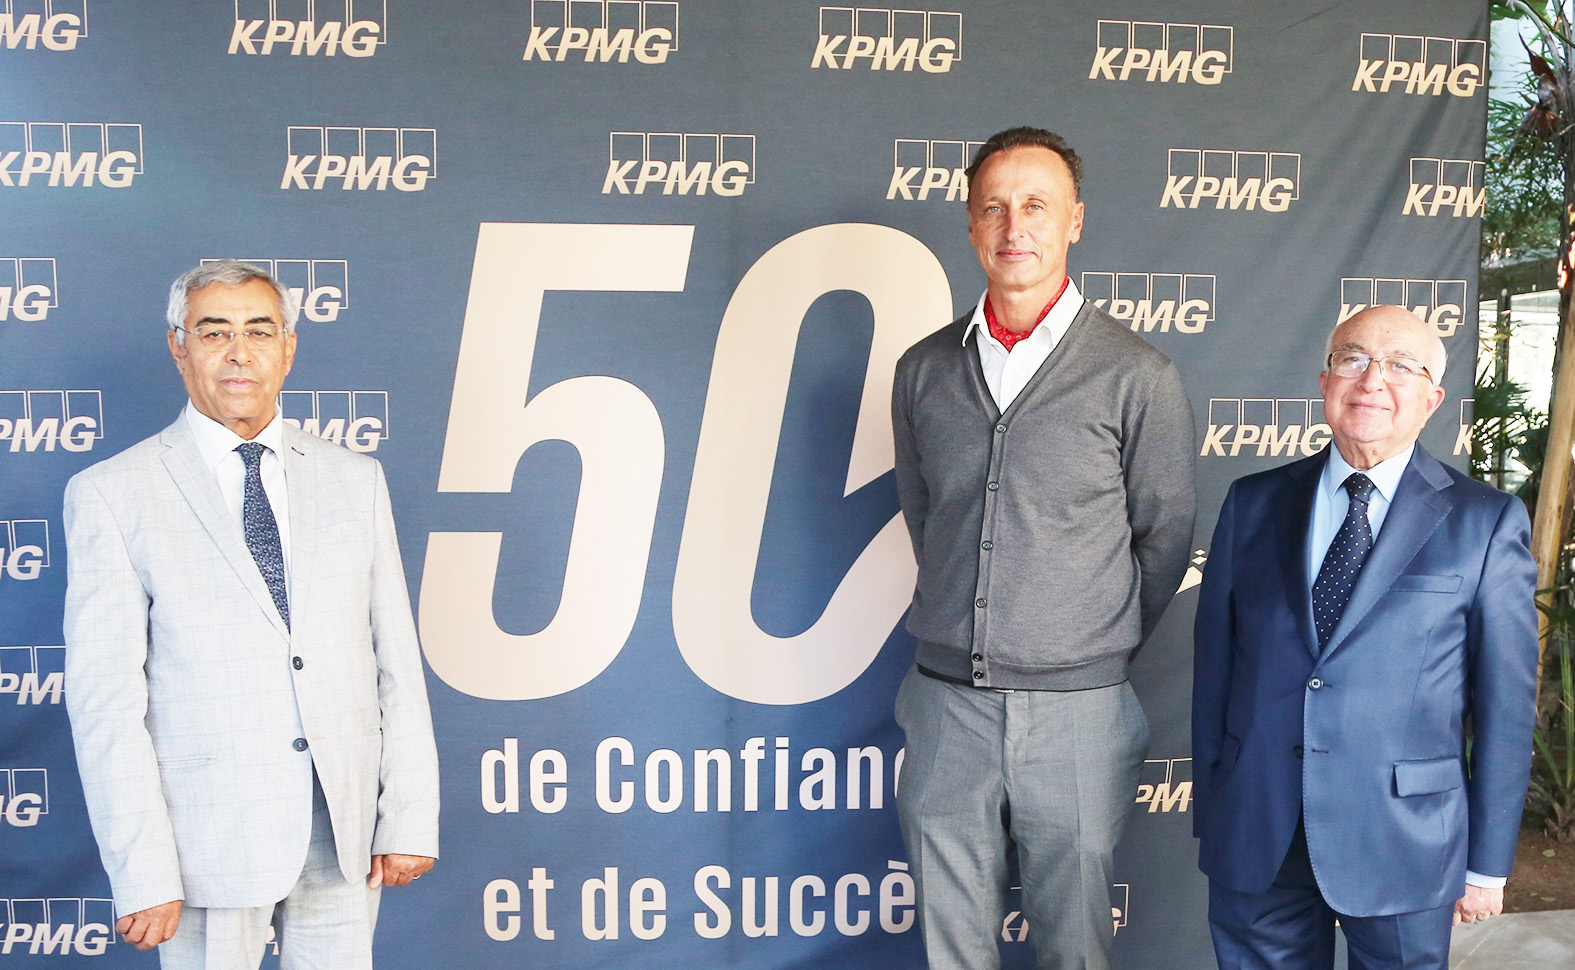 بعد مرور خمسين عاما..  KPMG تونس تواصل تعزيزها للنمو الاقتصادي في البلاد وتؤكد دعمها للشركات